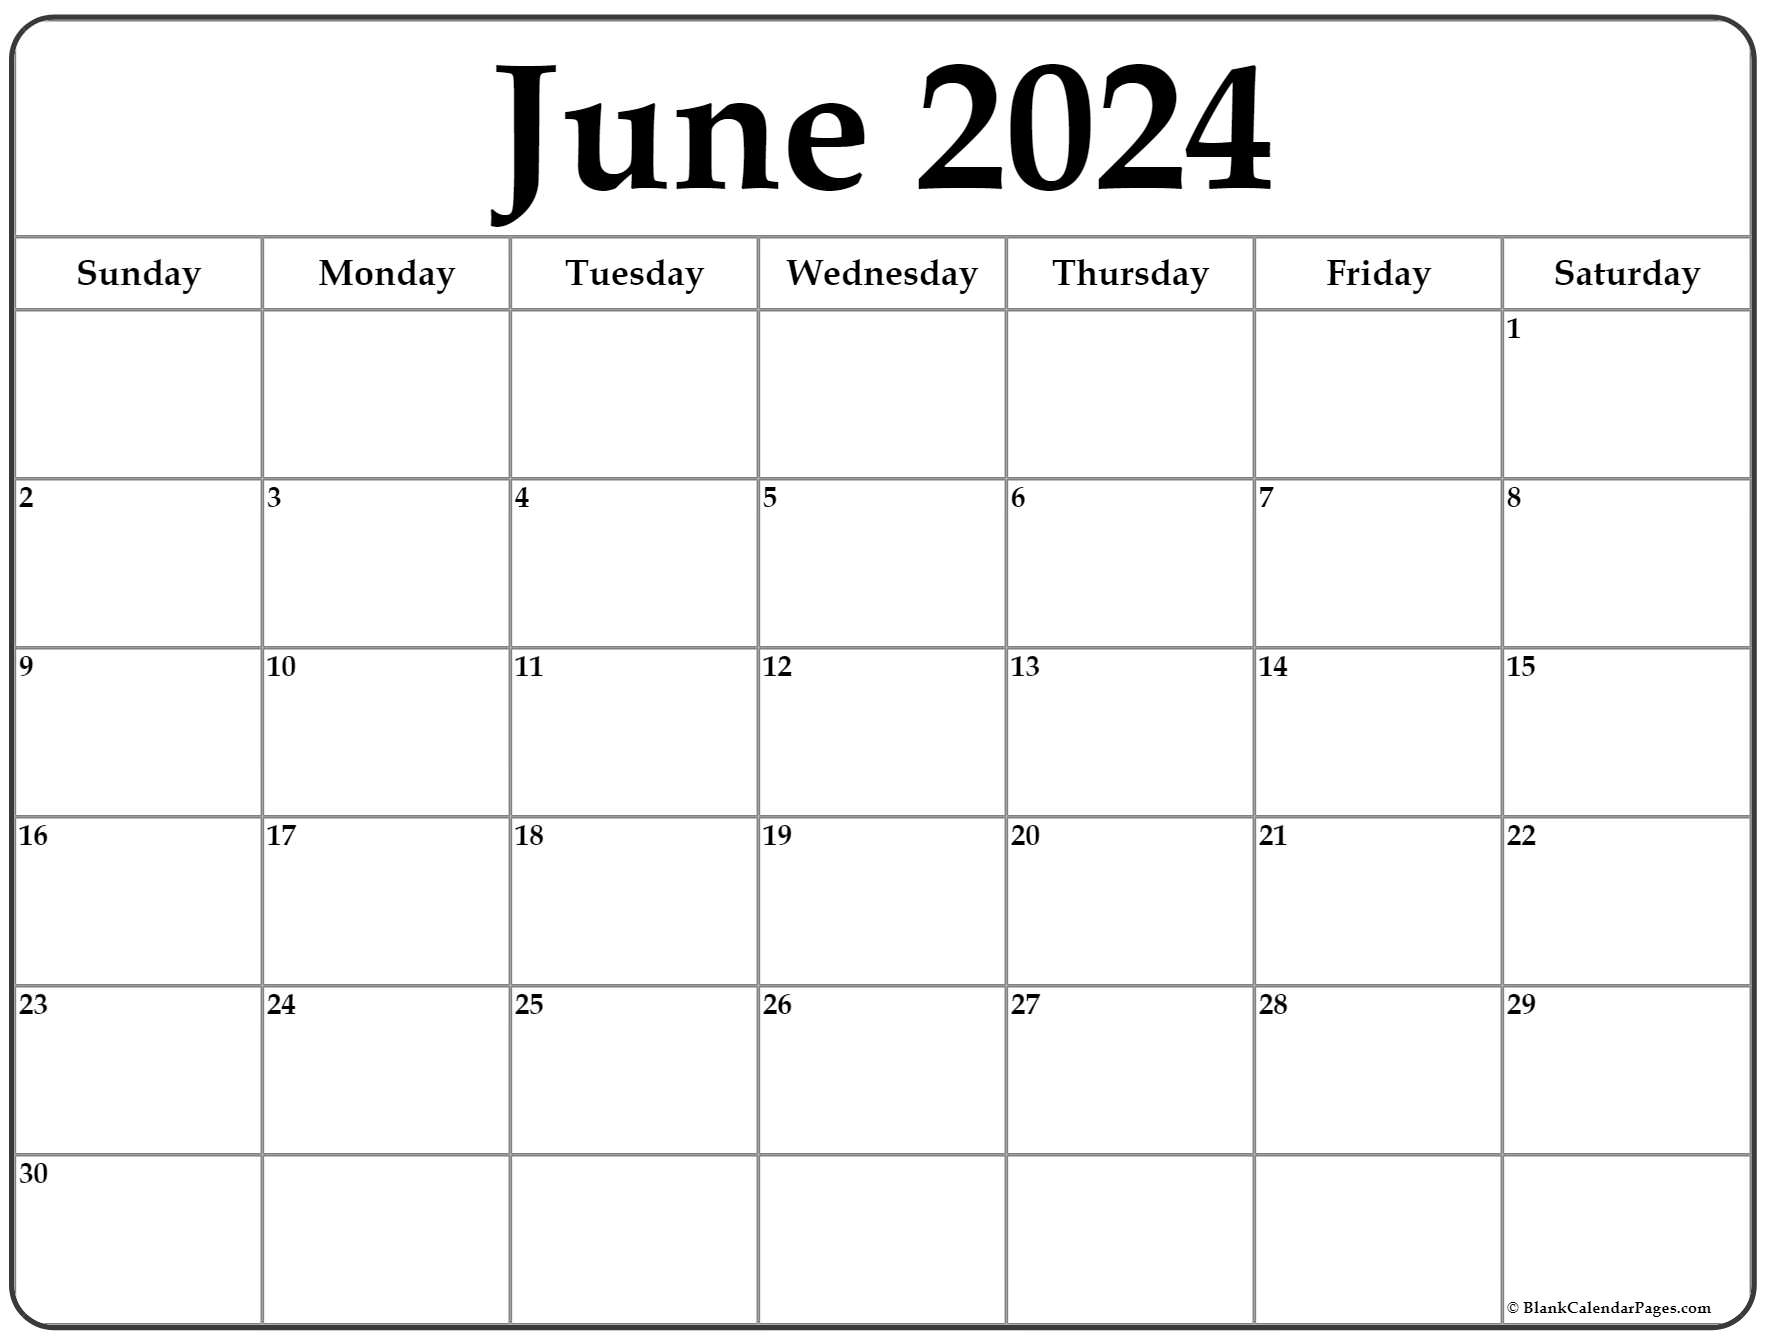 Free June 2024 Calendar Printable